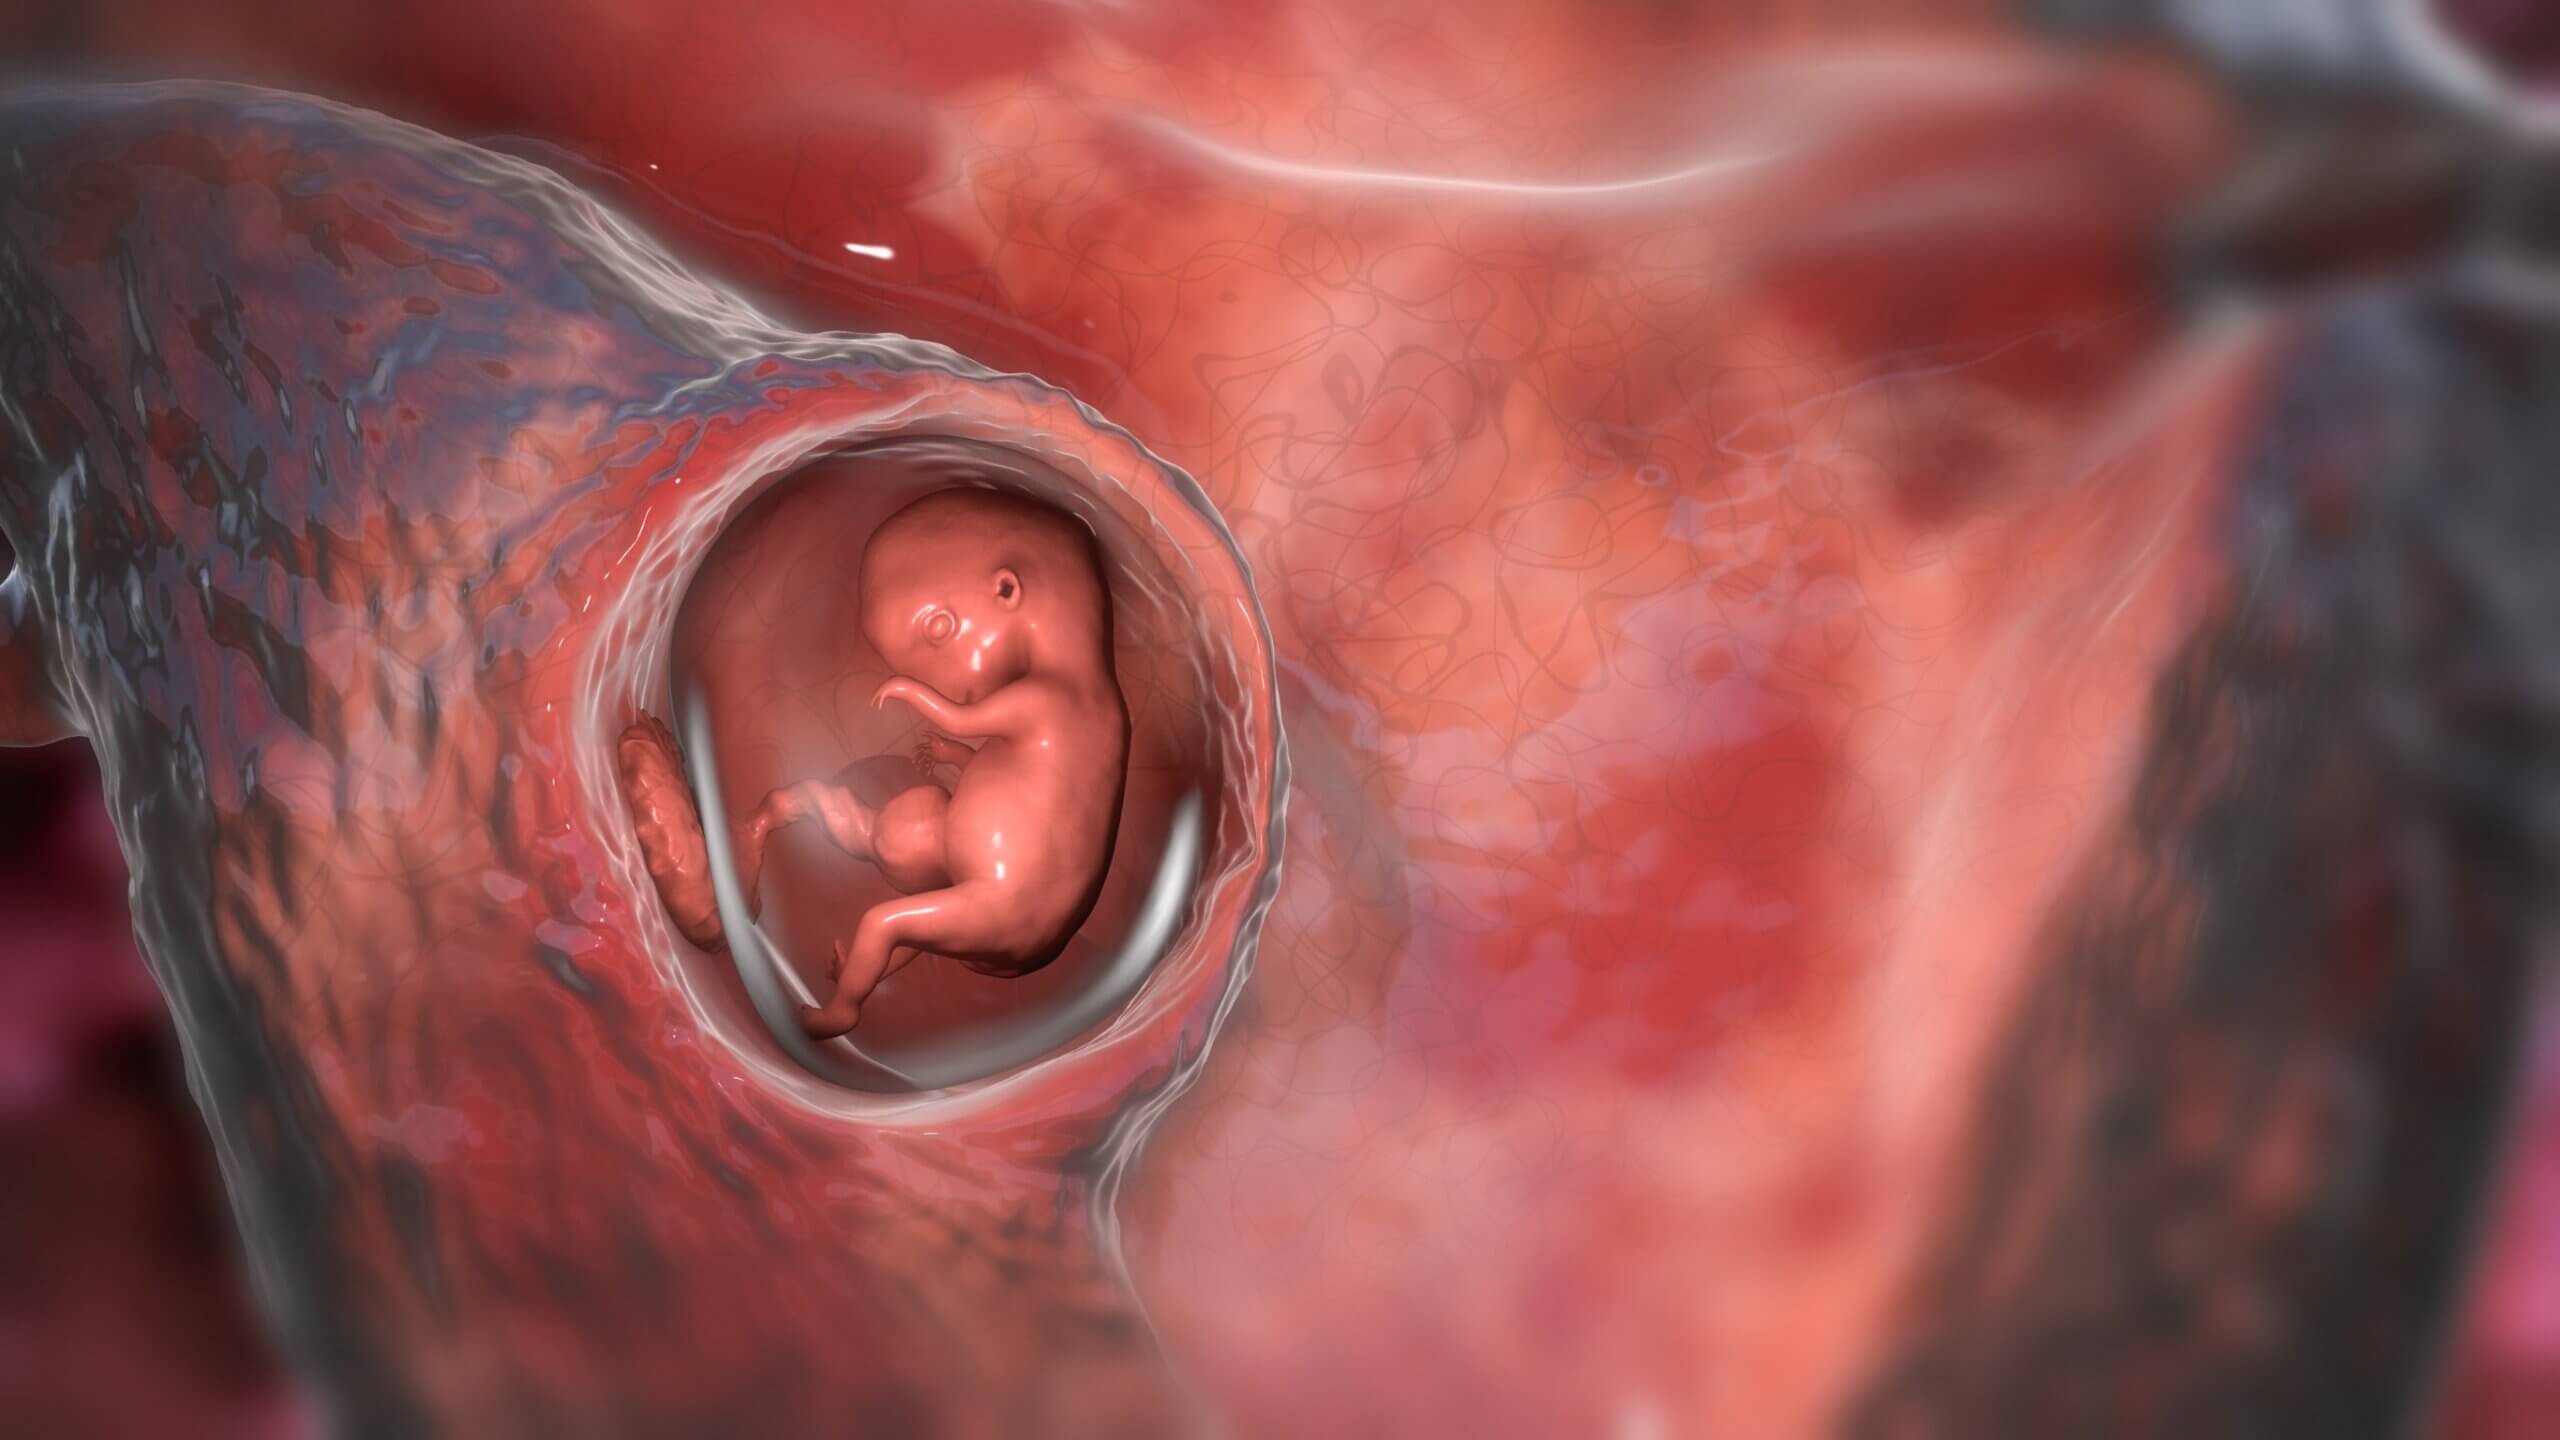 Tapón mucoso de la embarazada: qué es y cuál es su función